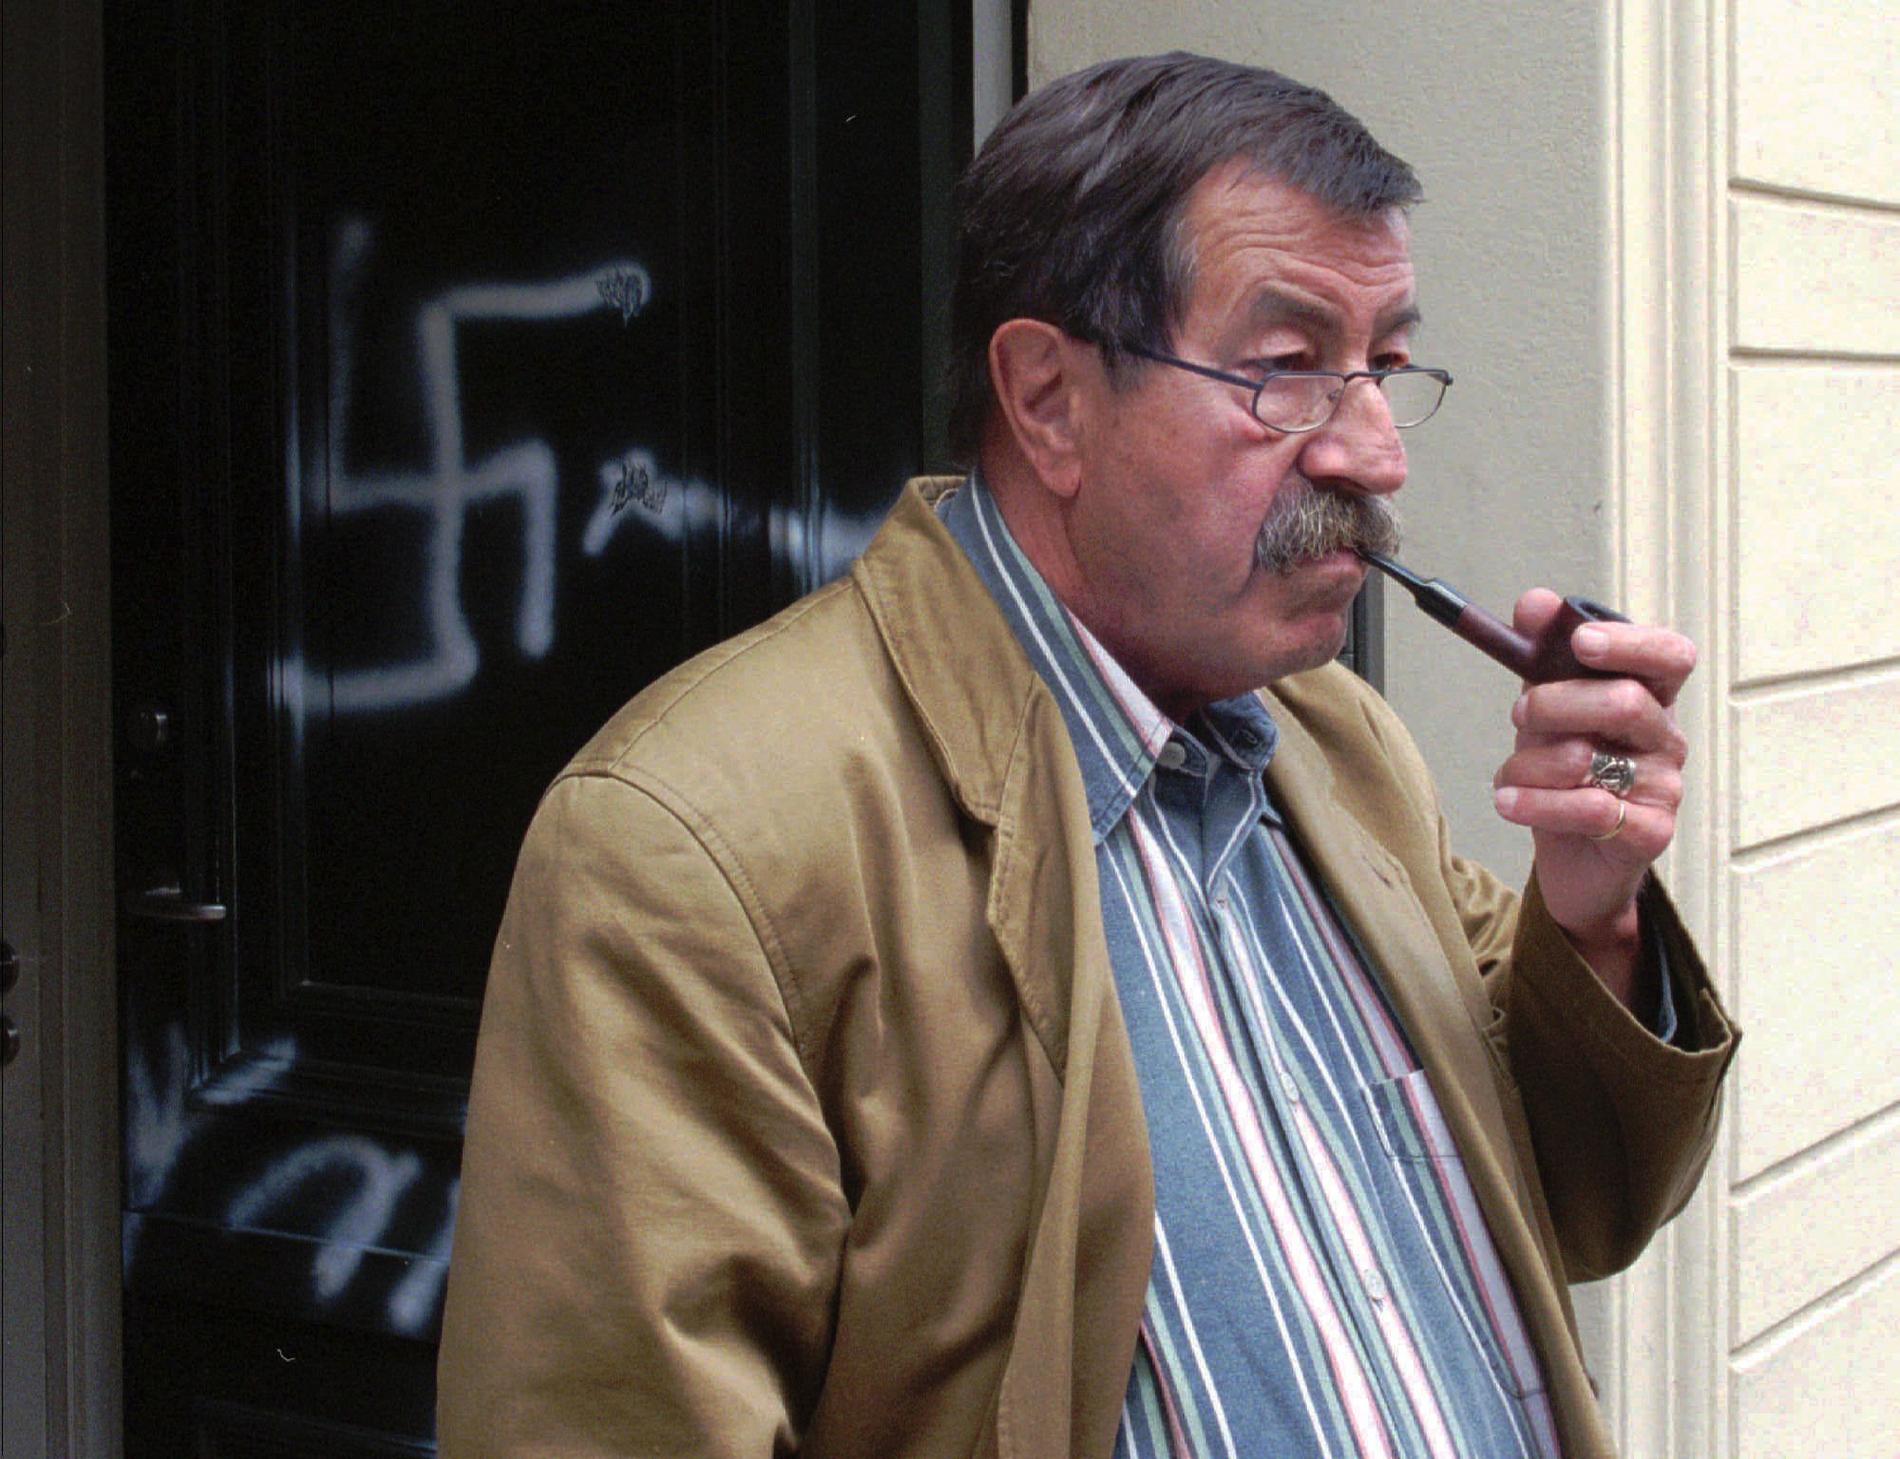 Nazikritikern Günter Grass utanför sitt hem som sprayats med hakkors, 1997.